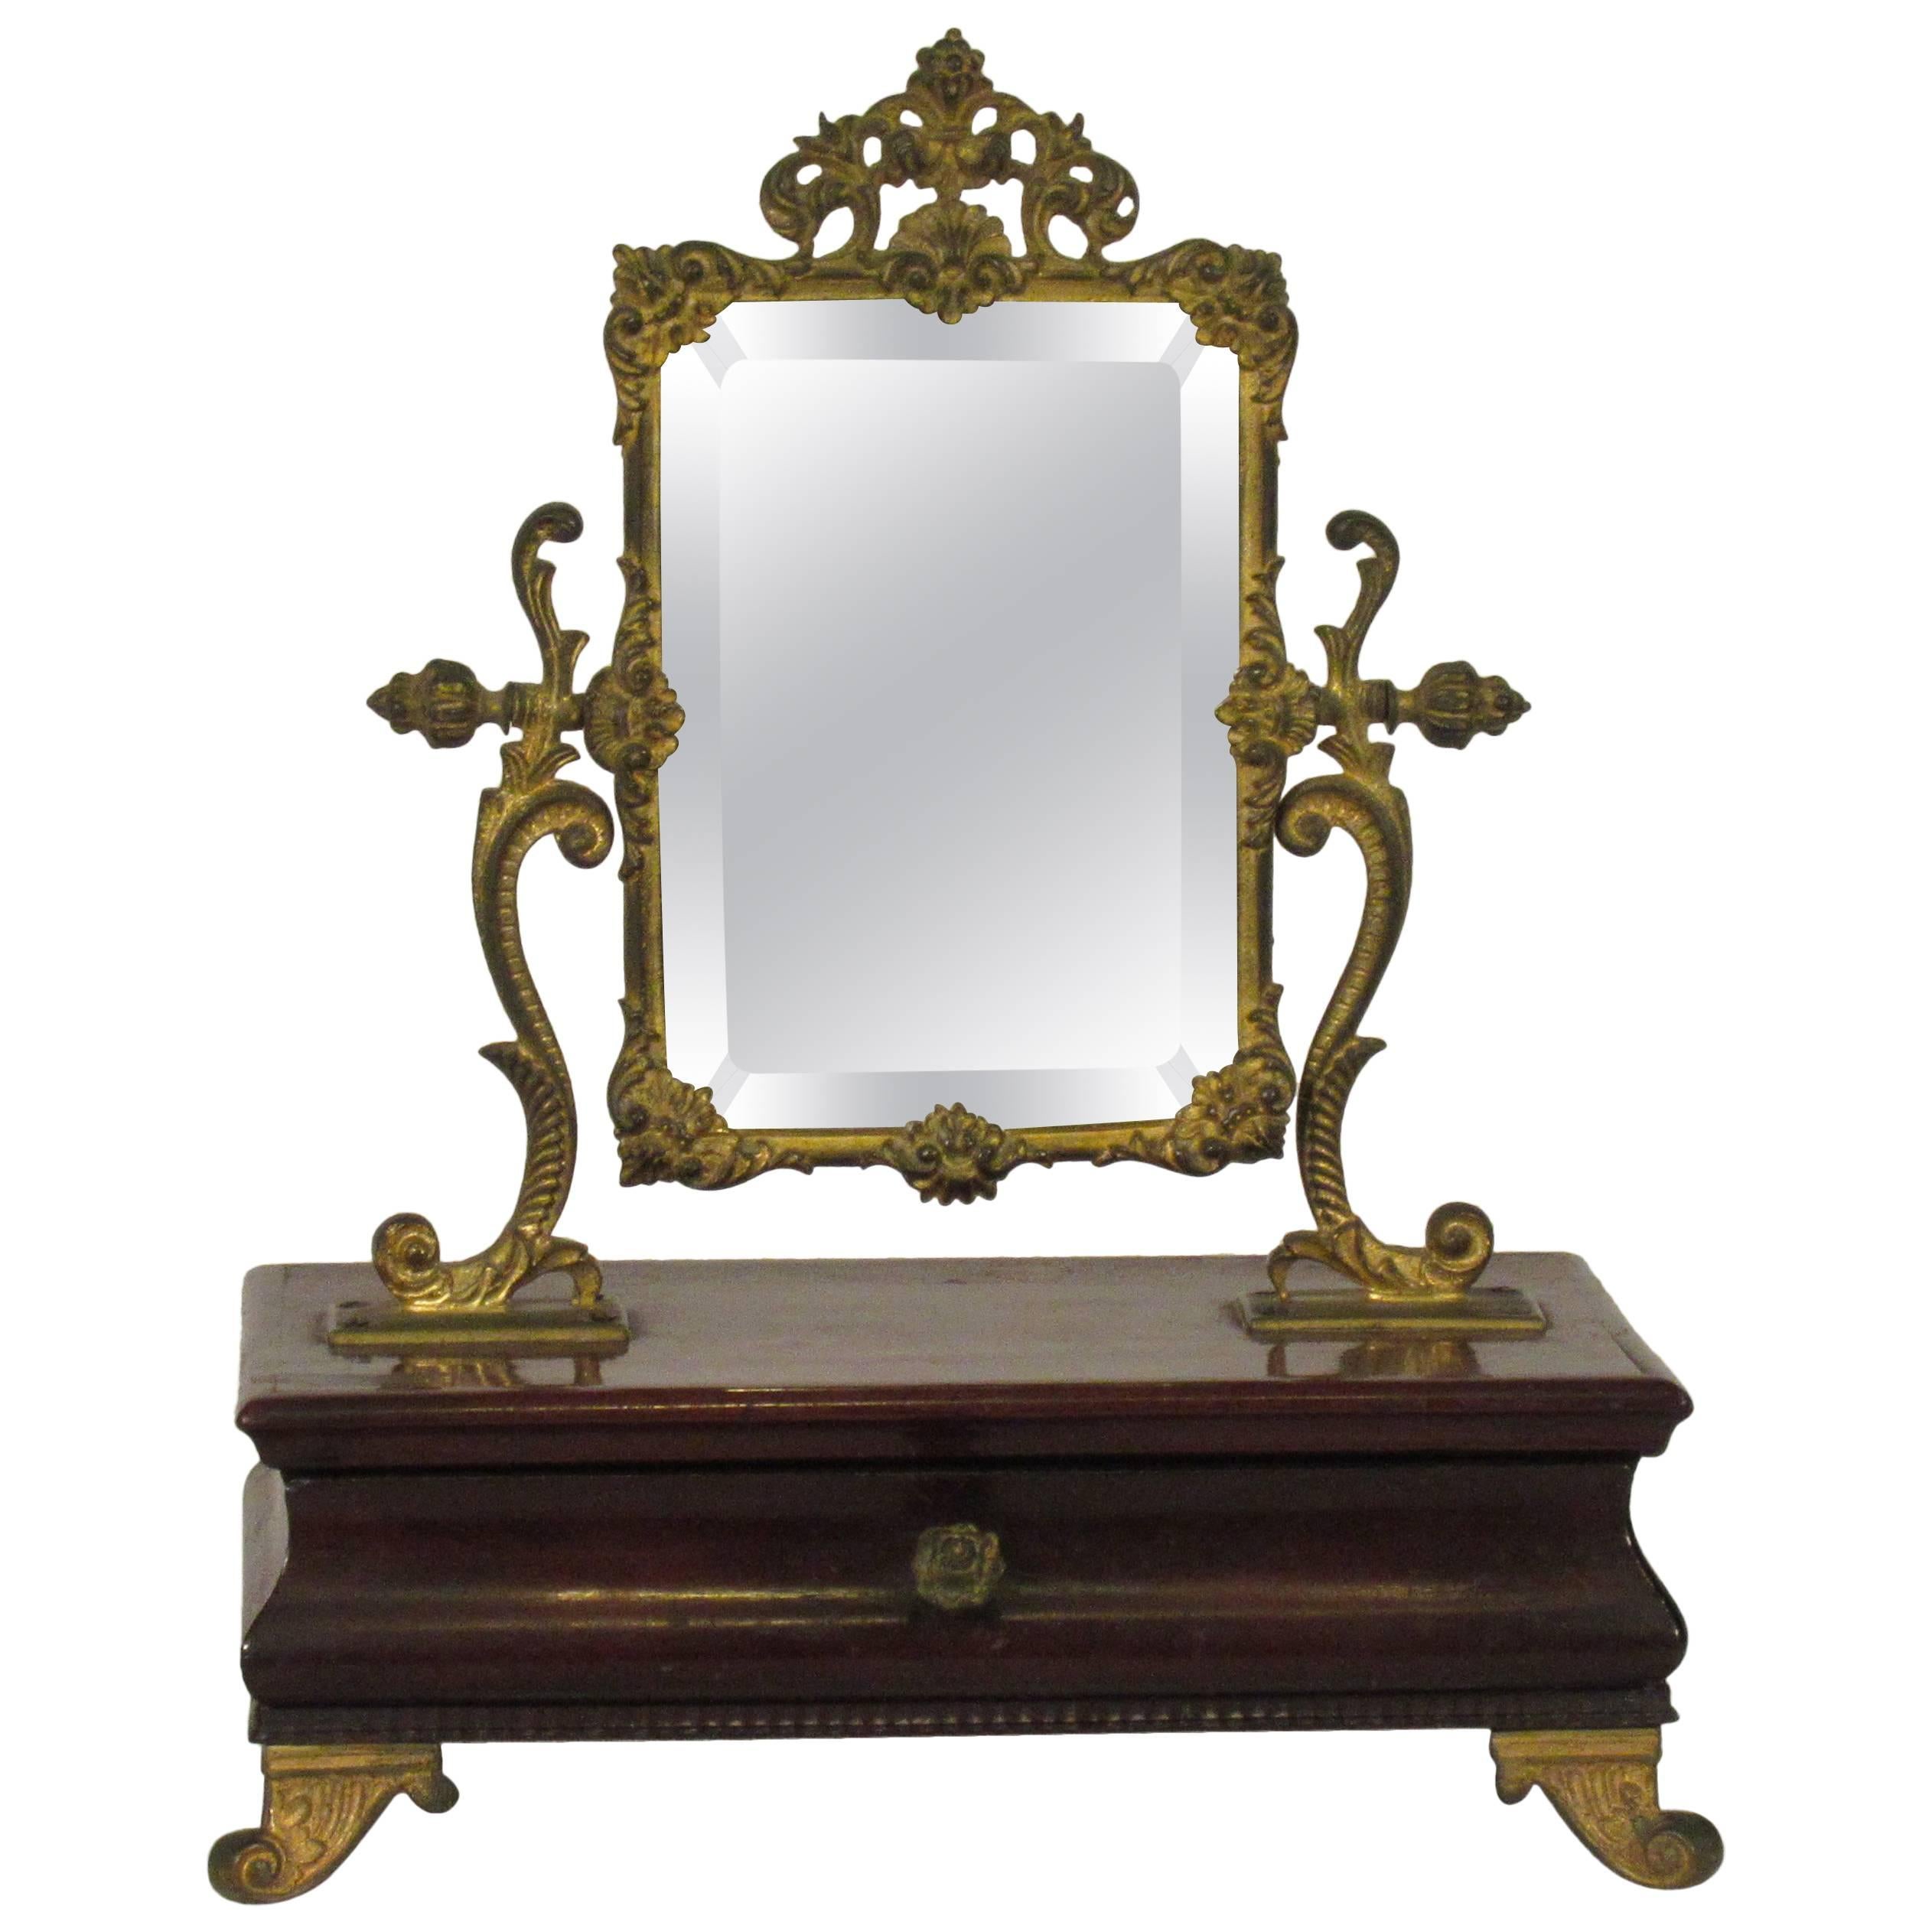 1910 French Jewelry Box with Brass Mirror